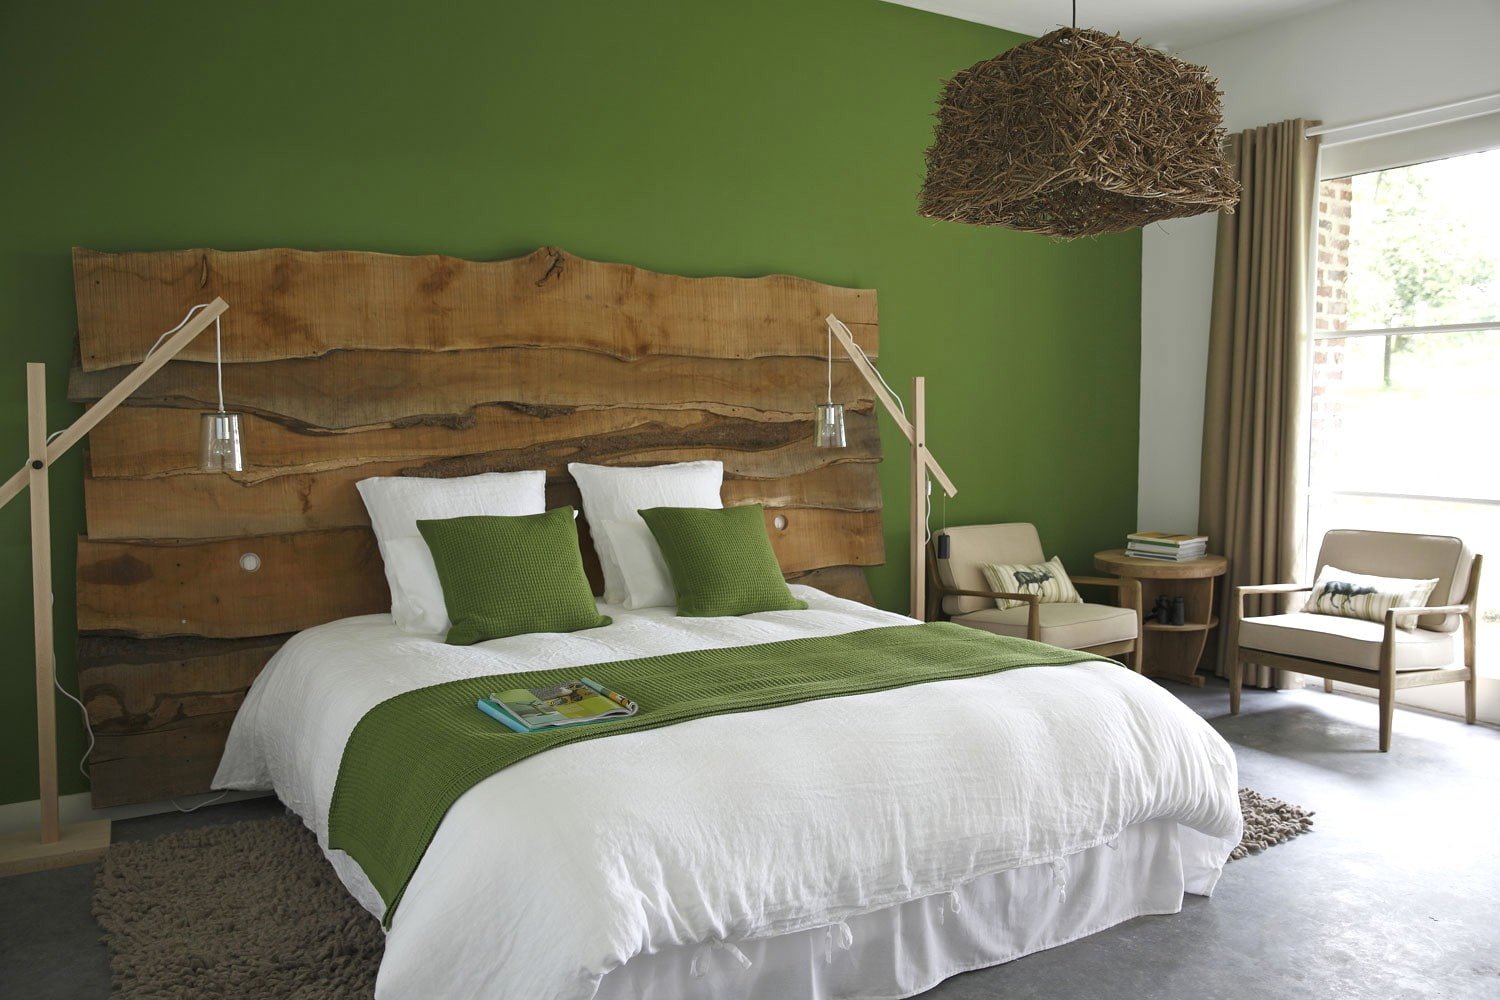 Спальня в зеленых тонах: идеи дизайна интерьера, лучшие сочетания цветов, фото с примерами